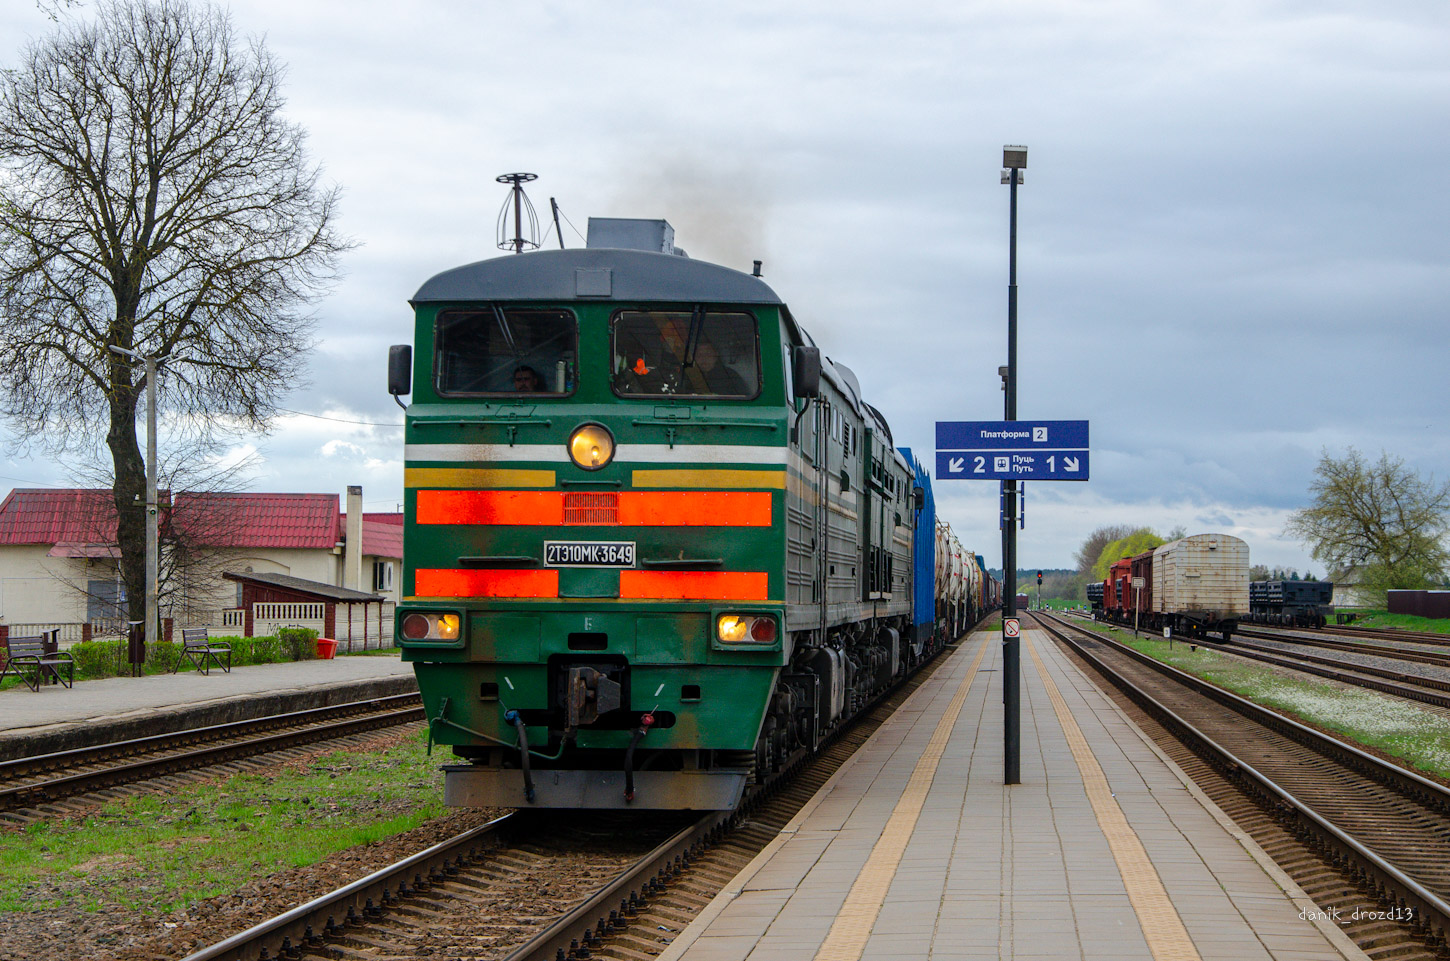 2ТЭ10МК-3649; Белорусская железная дорога — Станции